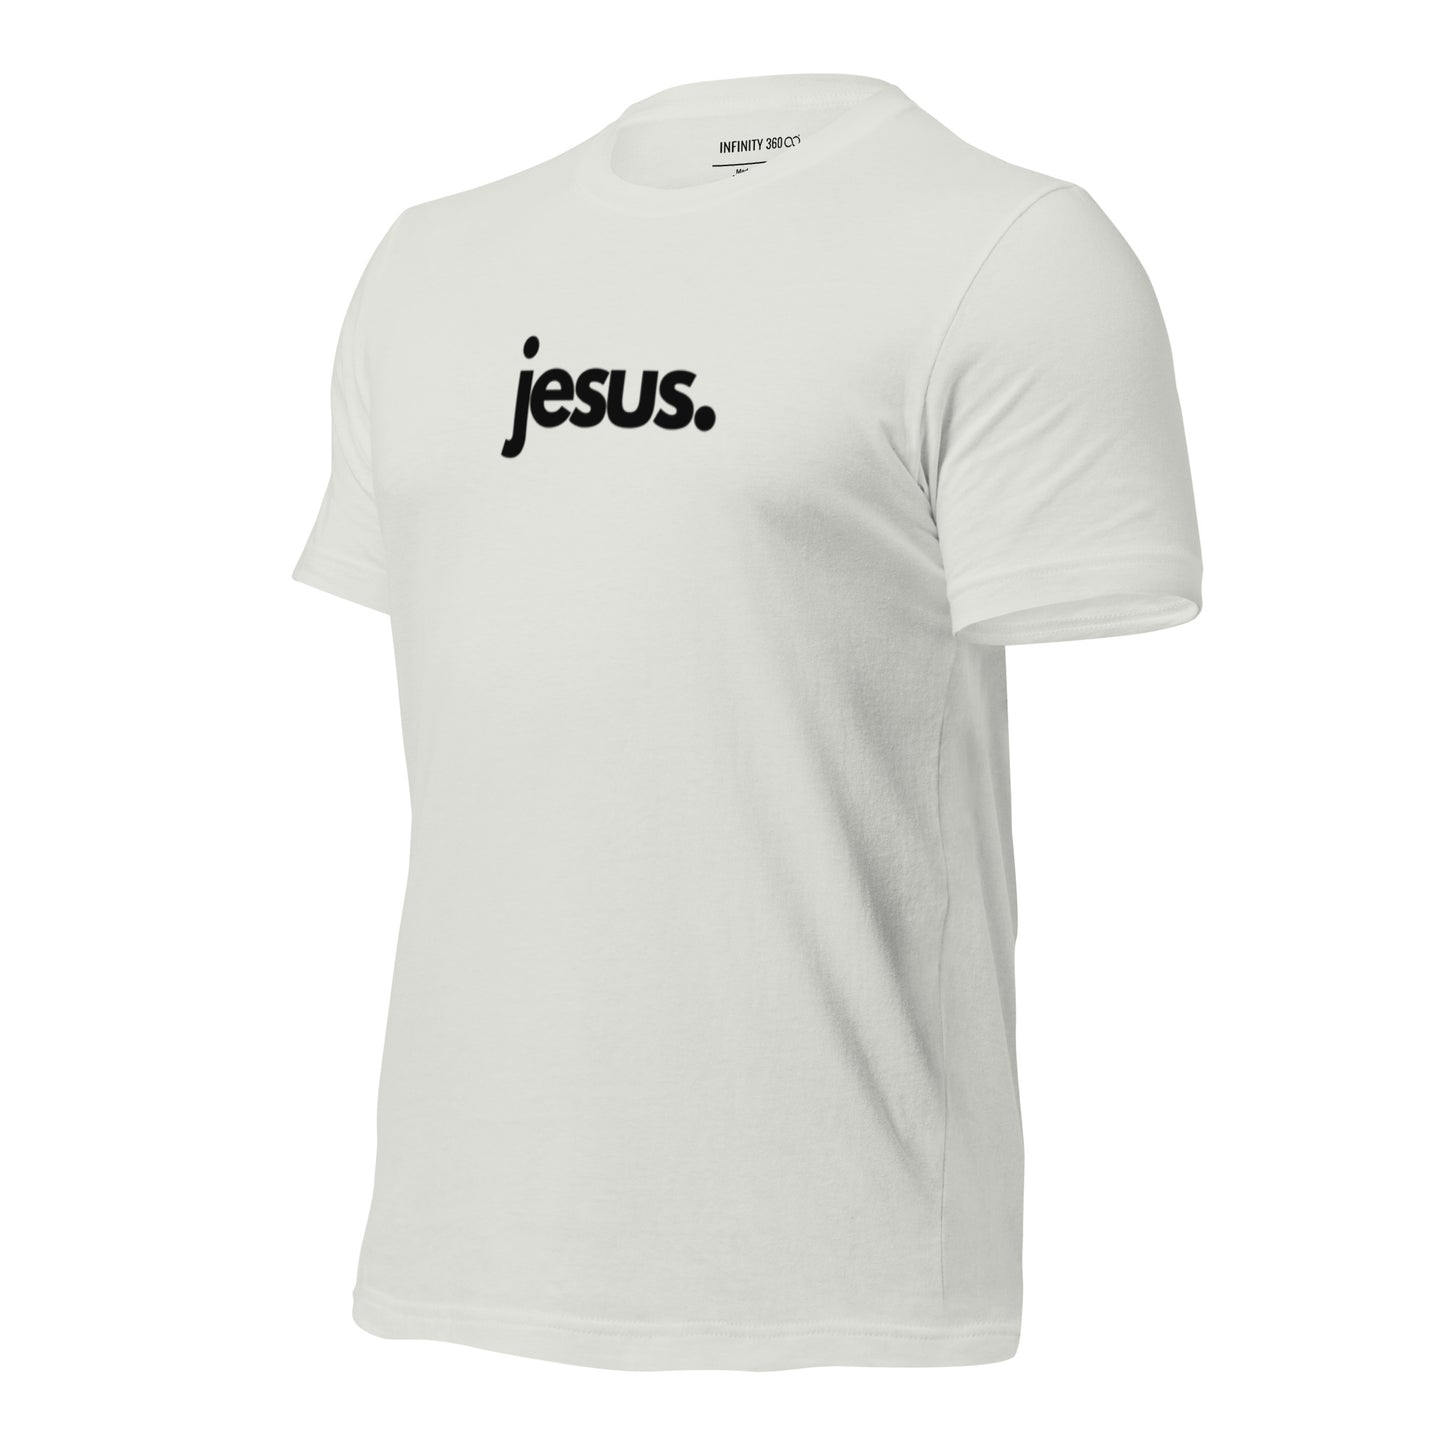 Jesus Period Unisex T-Shirt